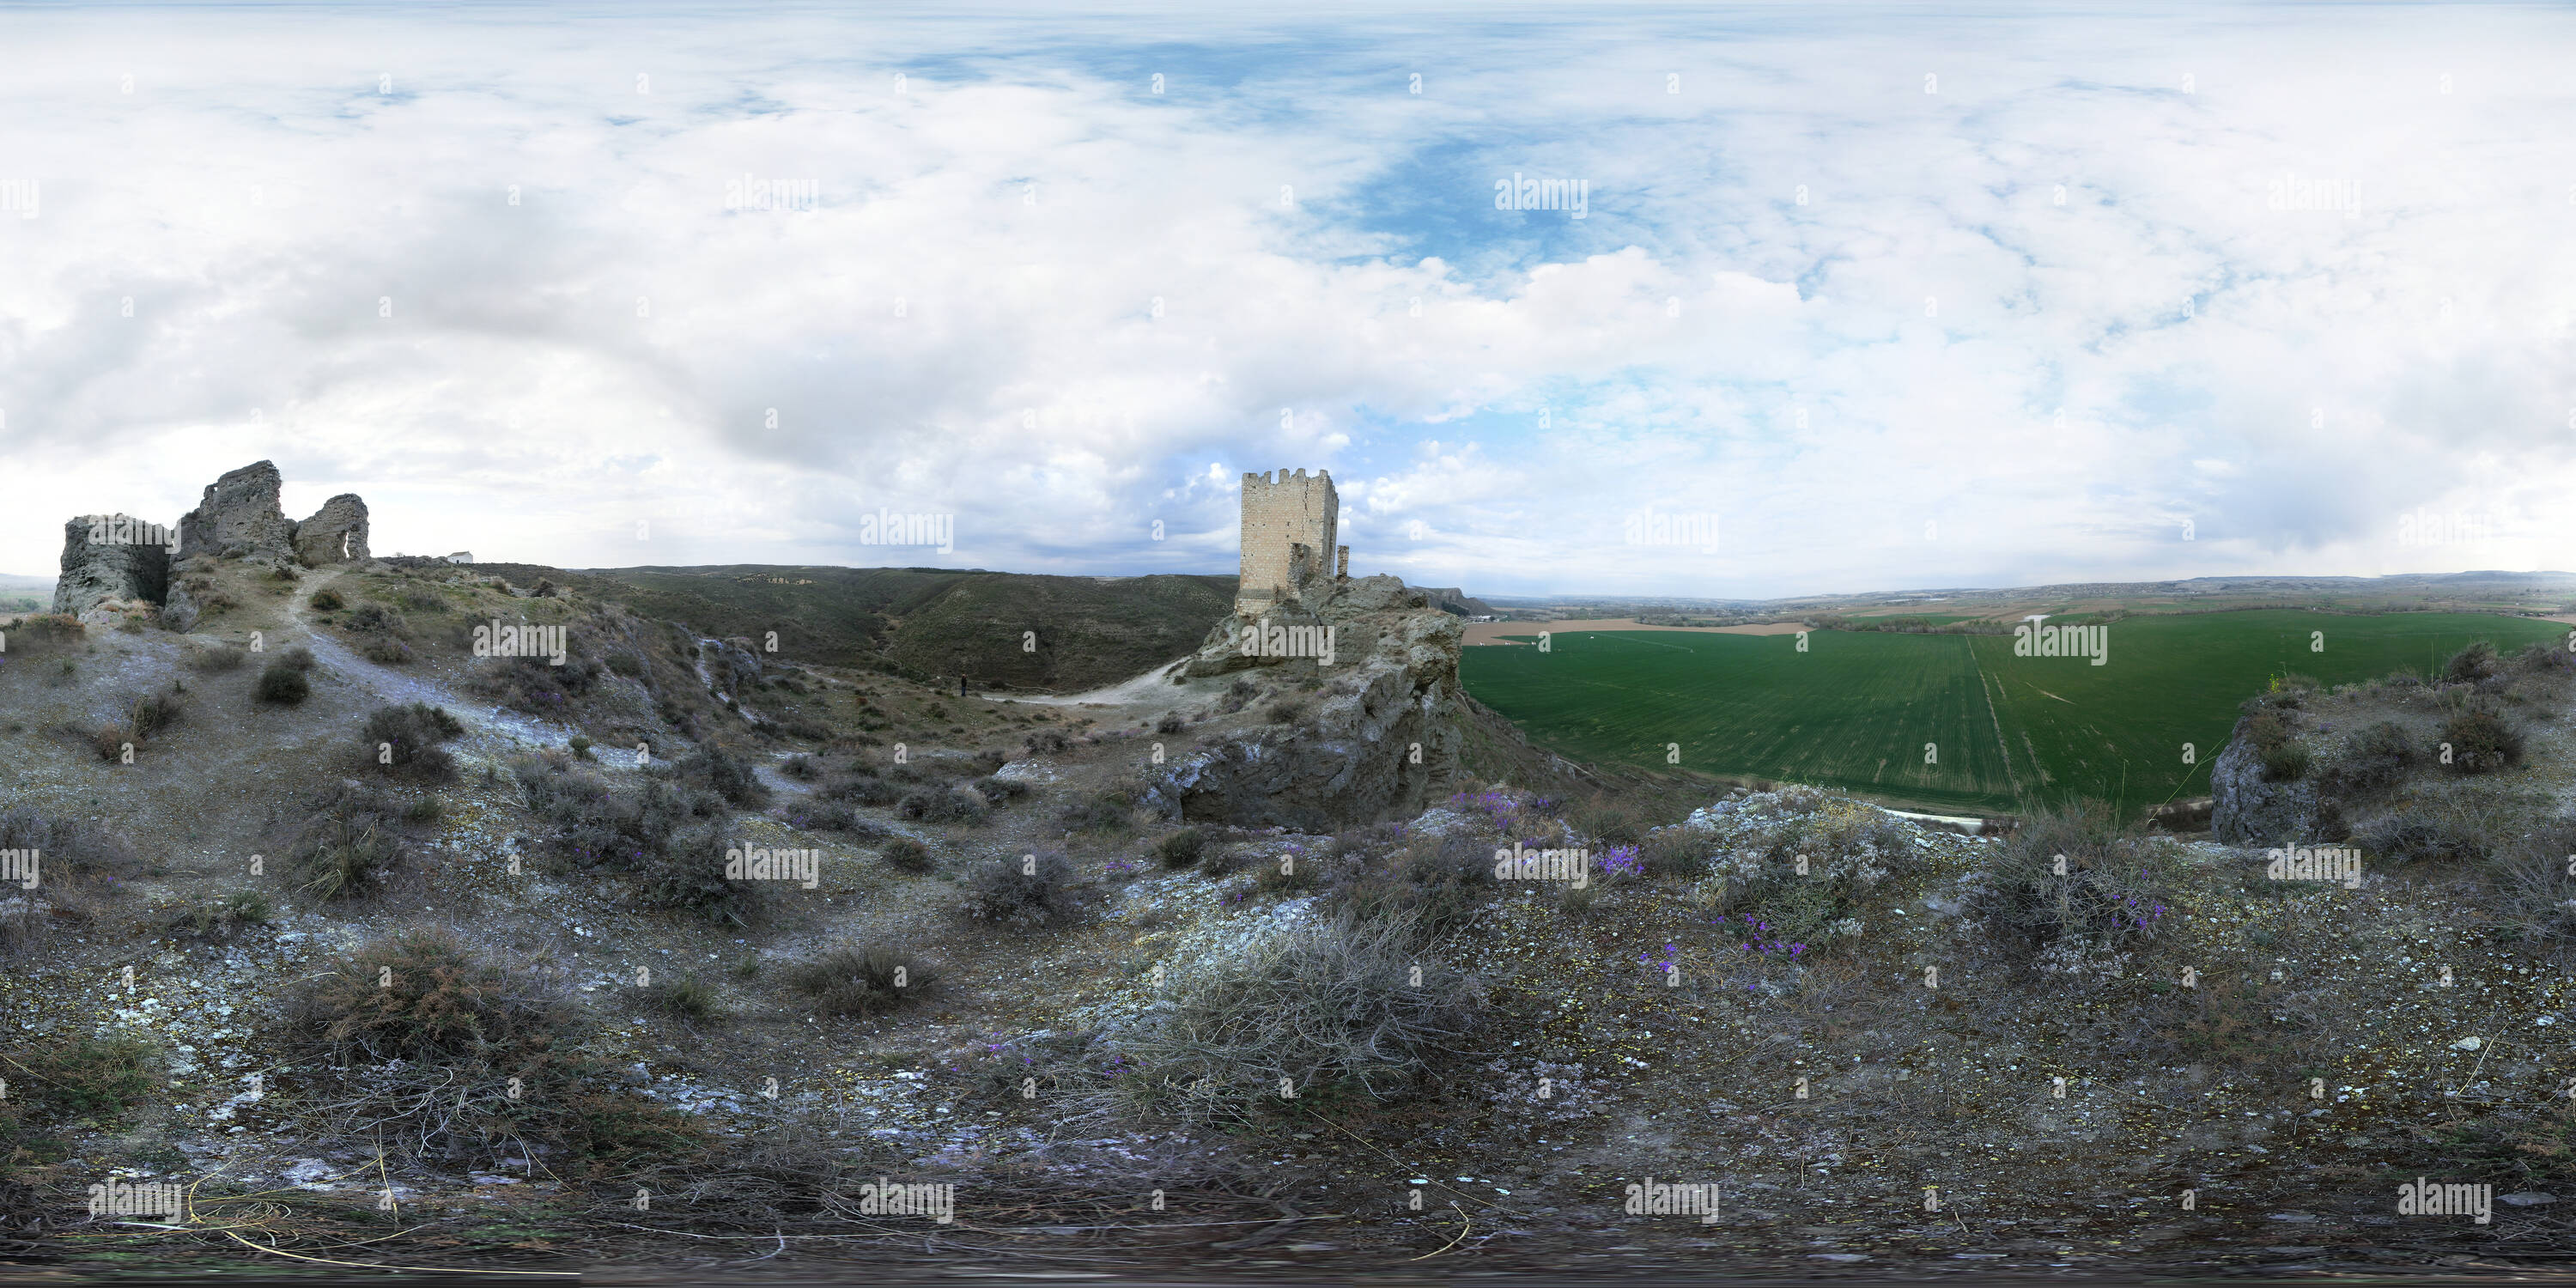 Vue panoramique à 360° de Despoblado y Castillo de Oreja (Toledo)